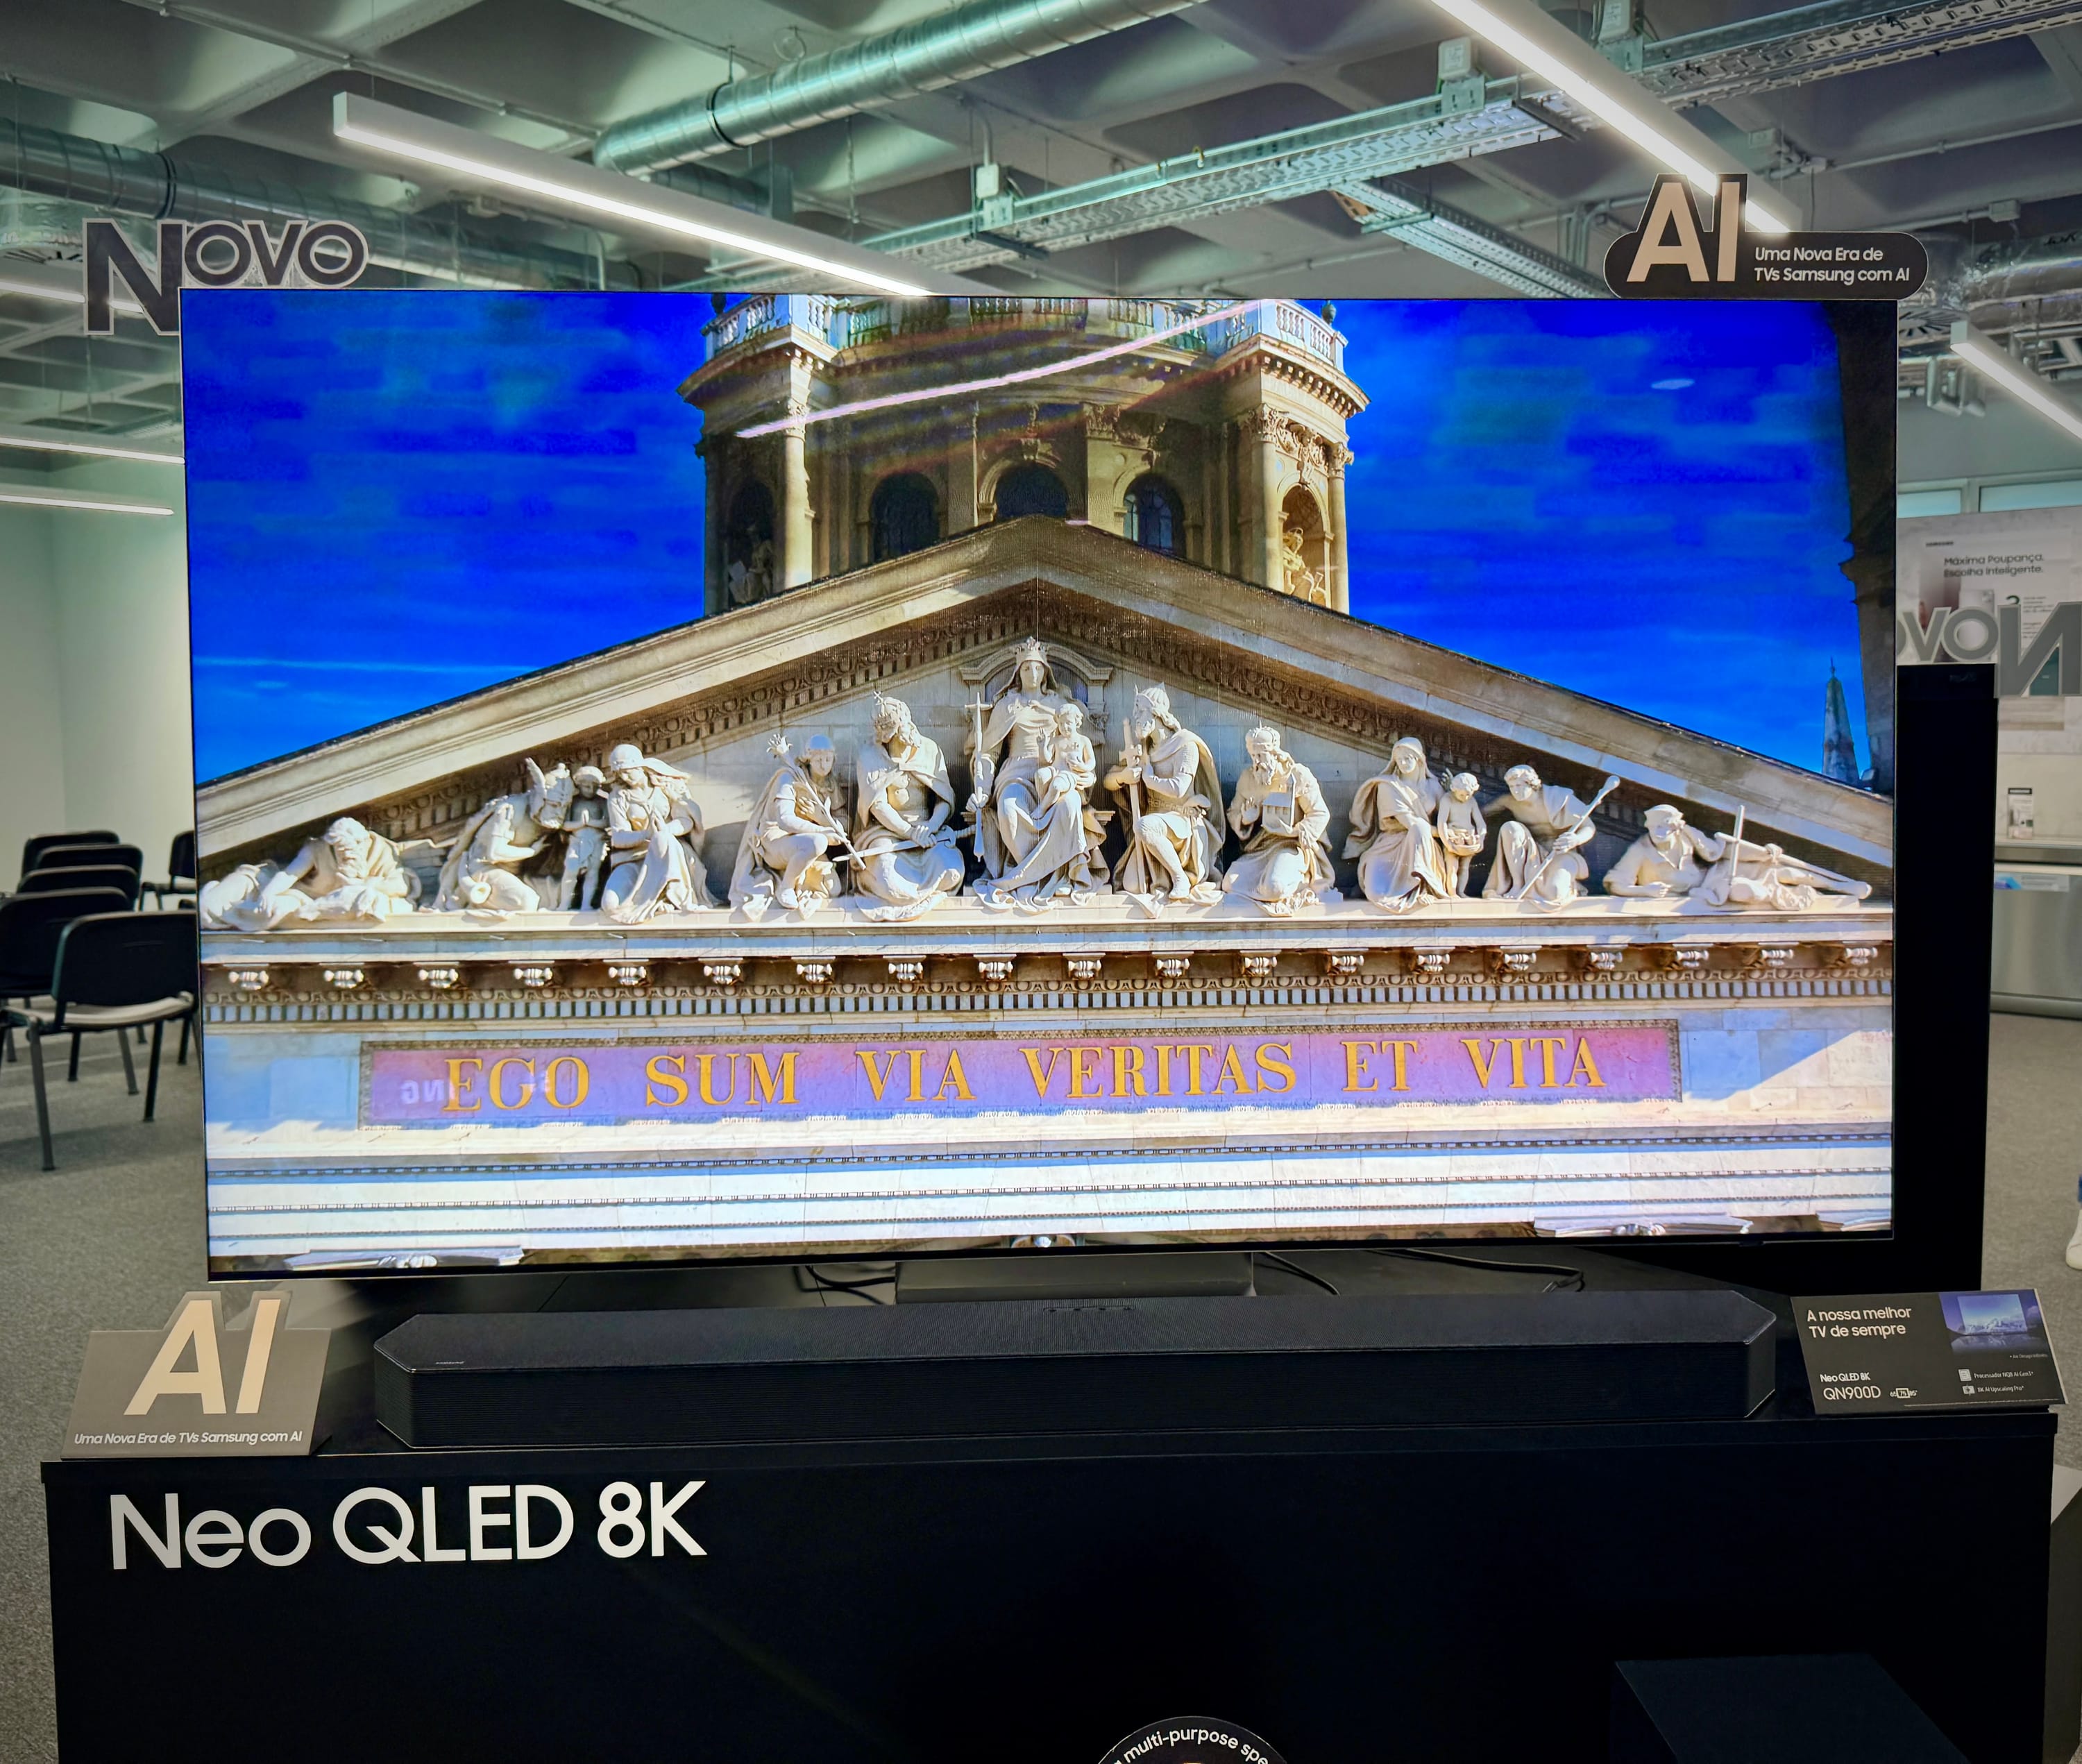 Novas Smart TVs Neo QLED Samsung com IA: uma nova era chegou!